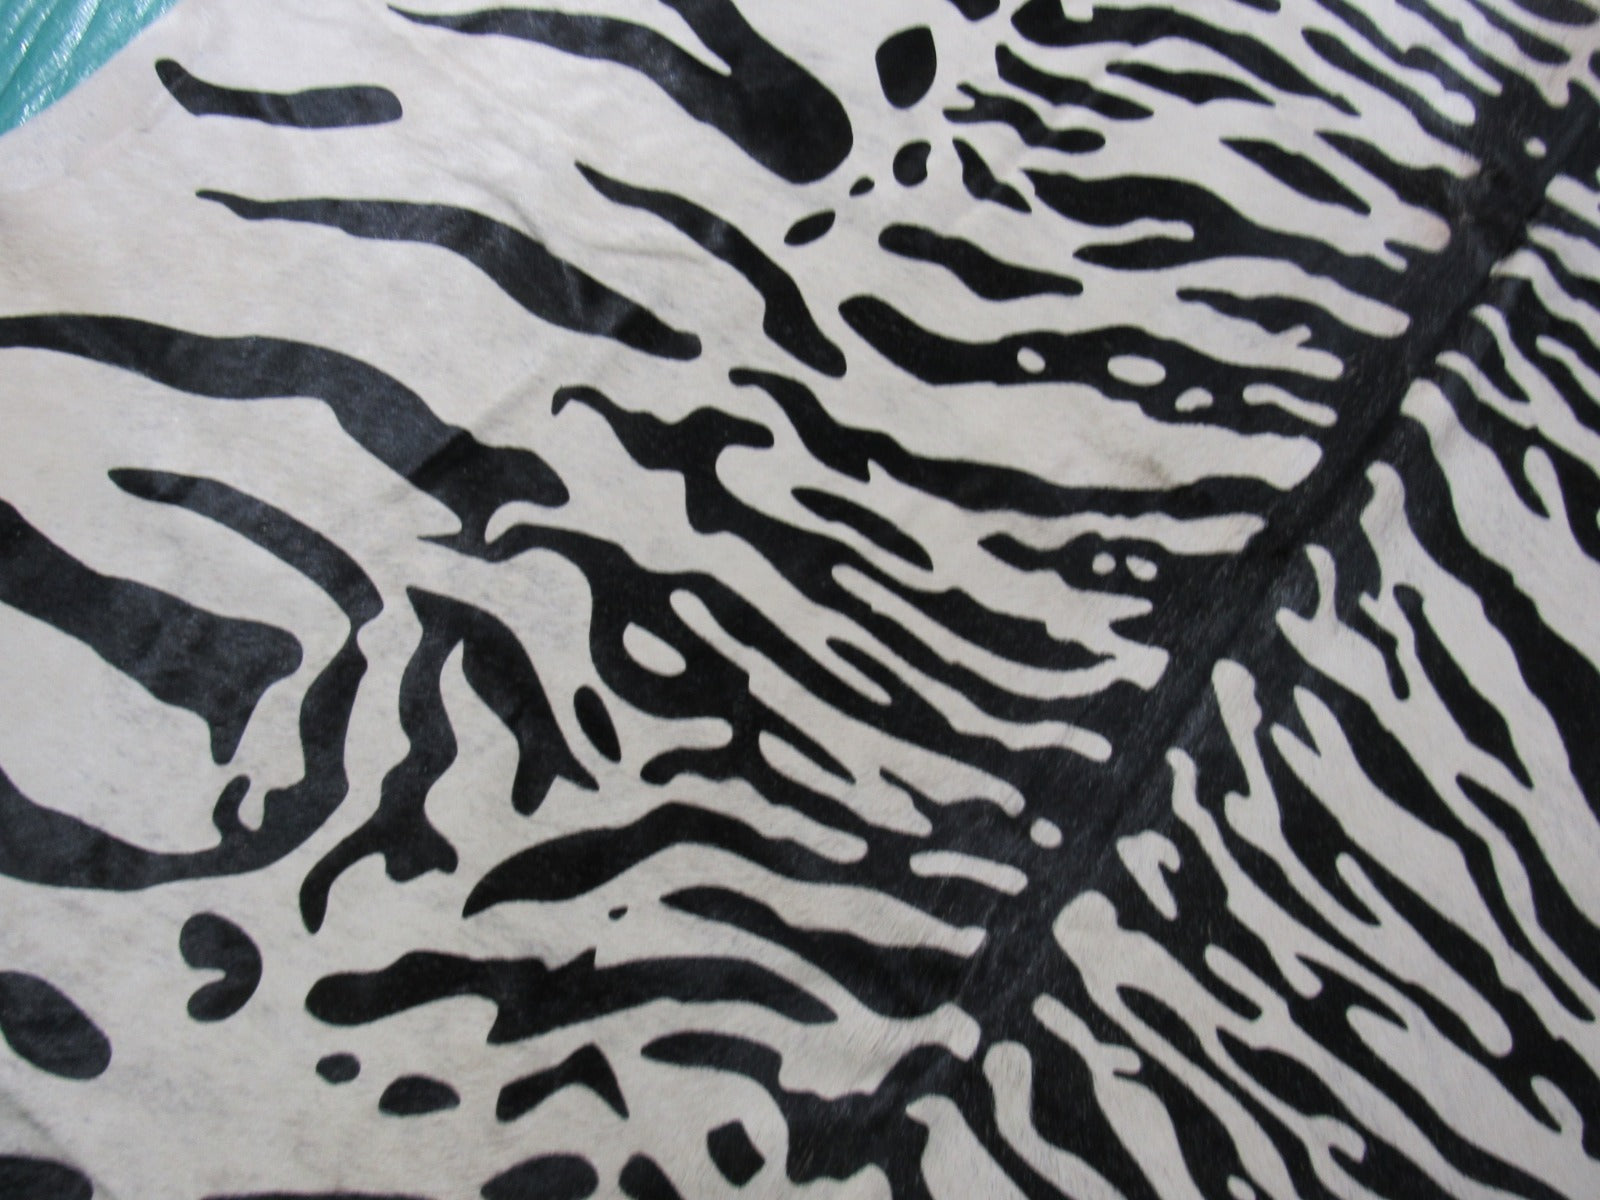 Light Grey Brindle Siberian Tiger Cowhide Rug Size: 8x6.5 feet O-1132